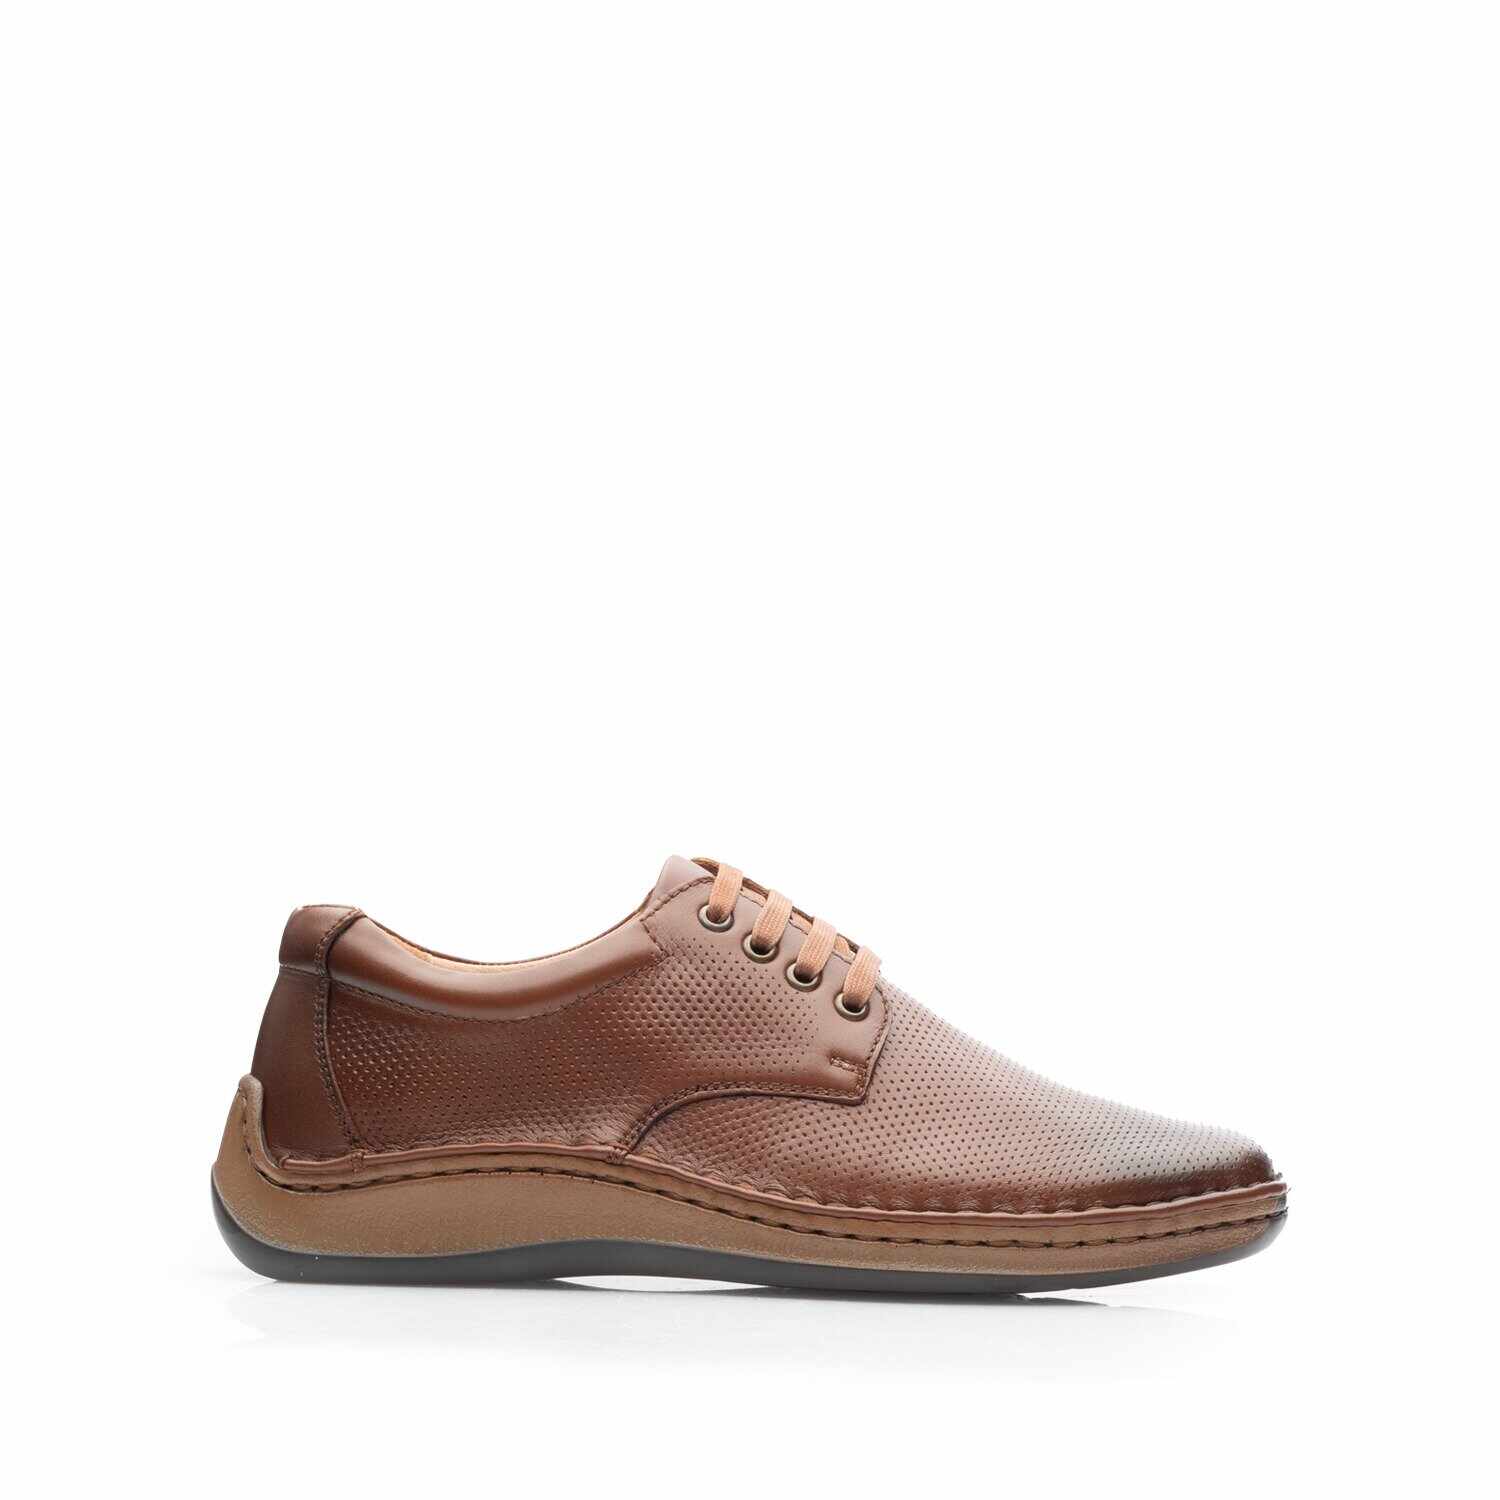 Pantofi casual bărbați din piele naturală,Leofex - 594 Cognac Box Presat